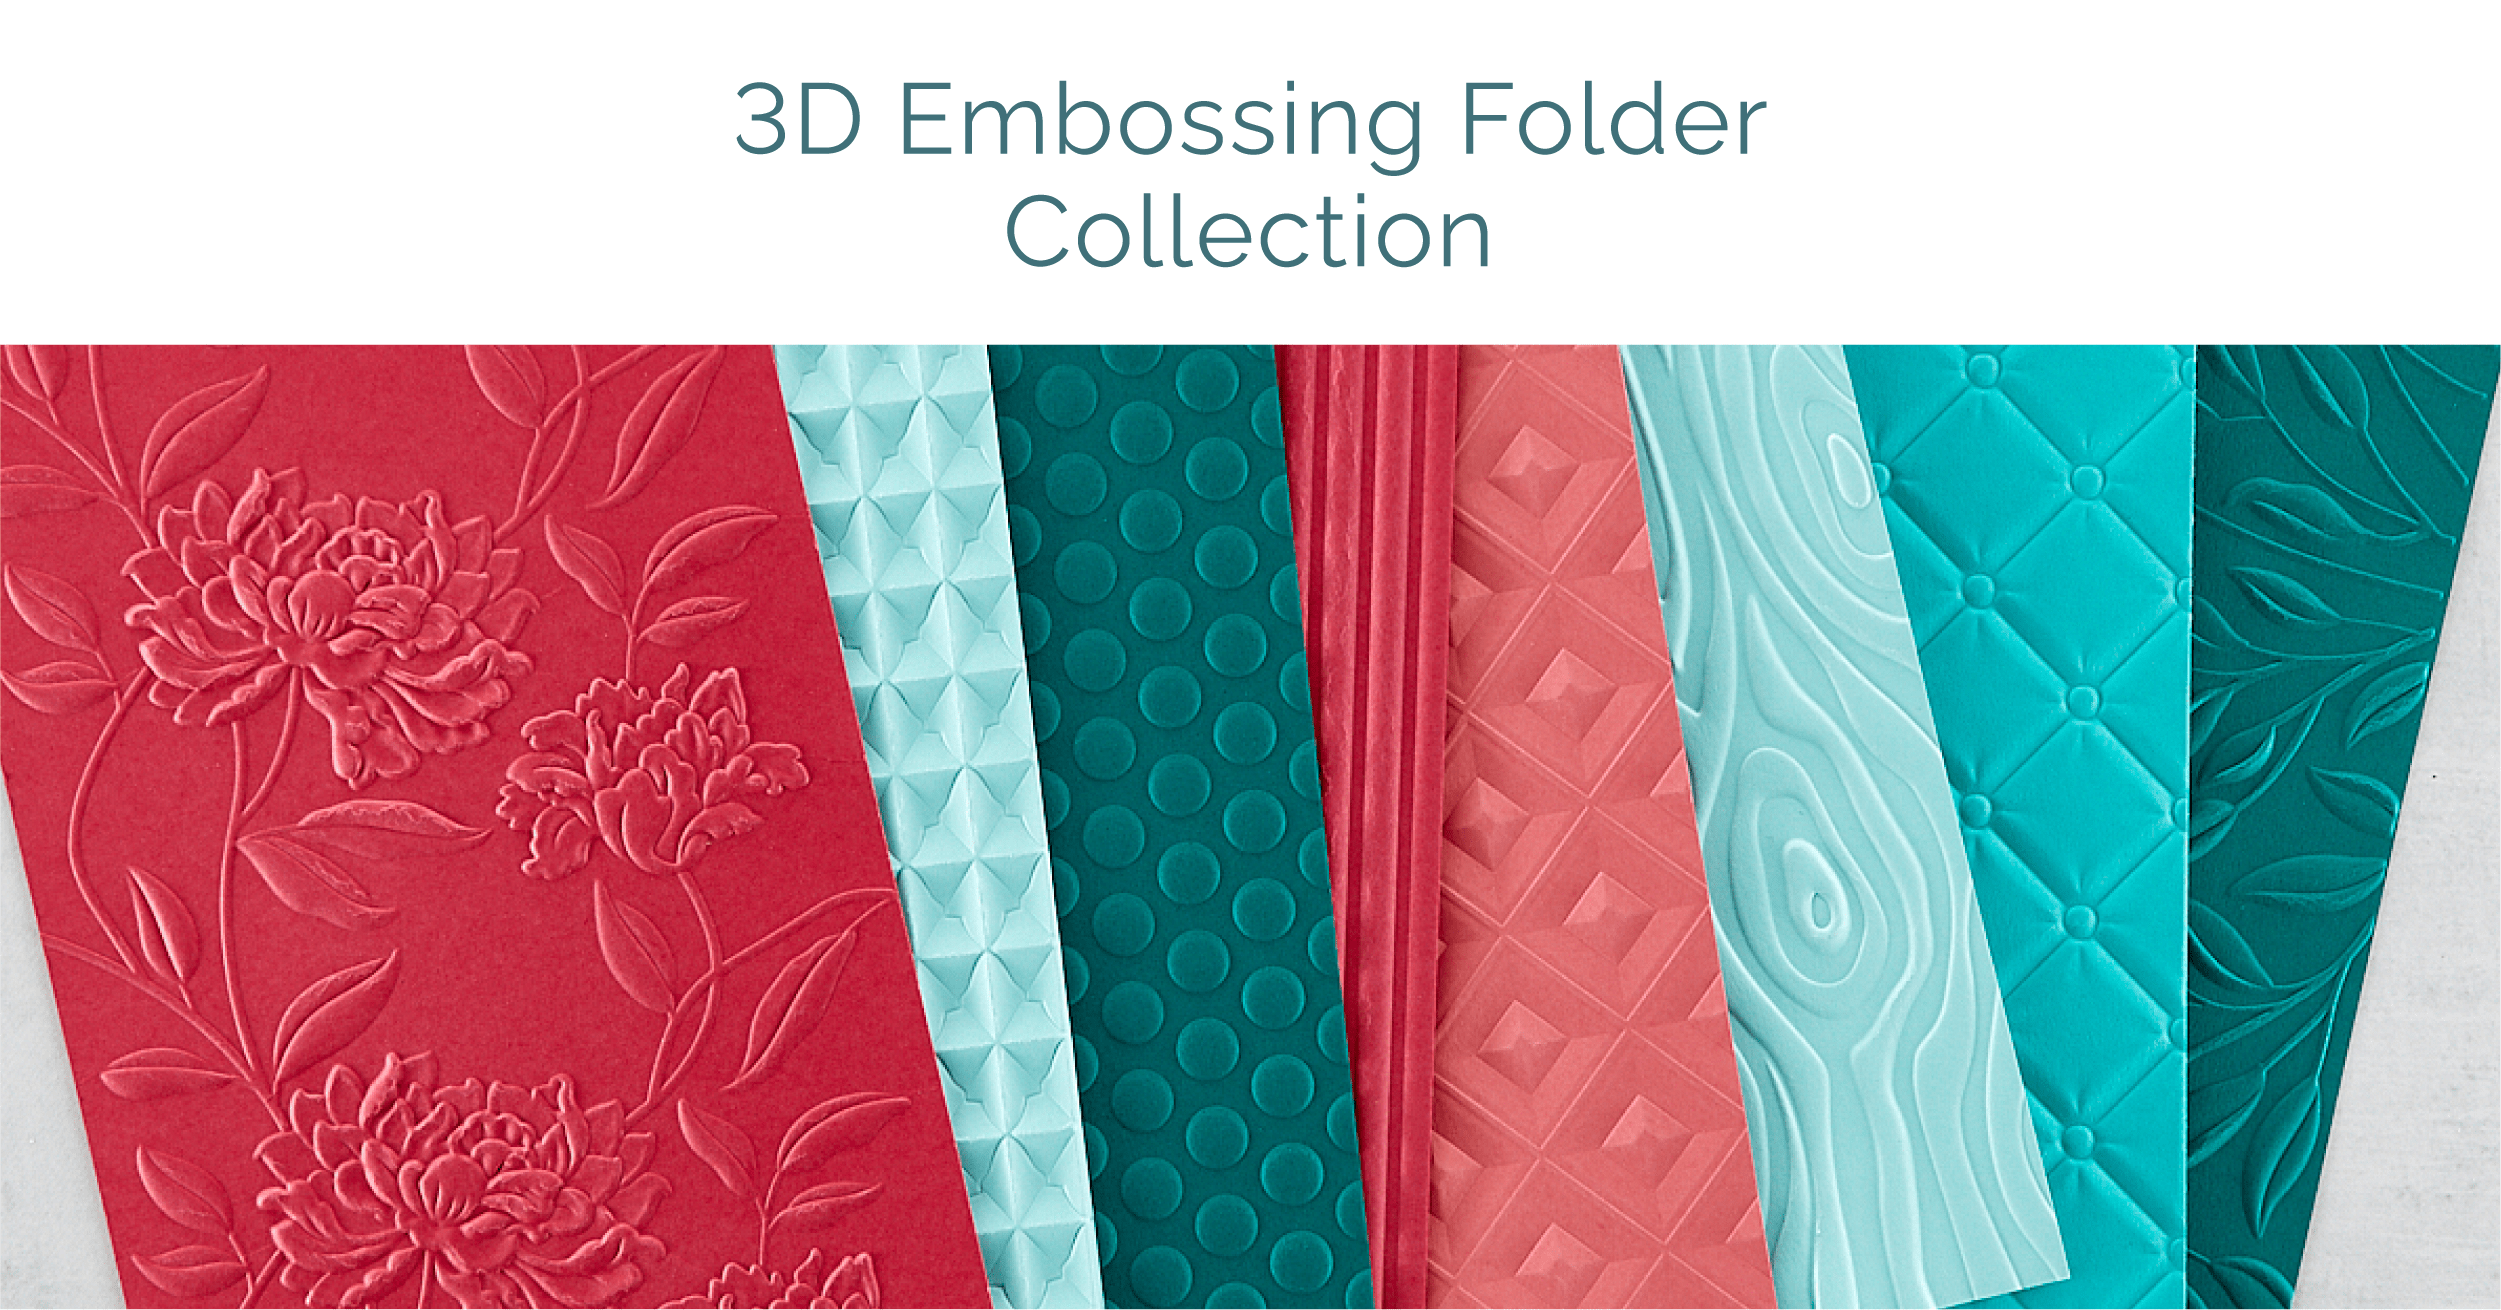 Our Top 15 3D Embossing Folder Card Ideas - Spellbinders Blog